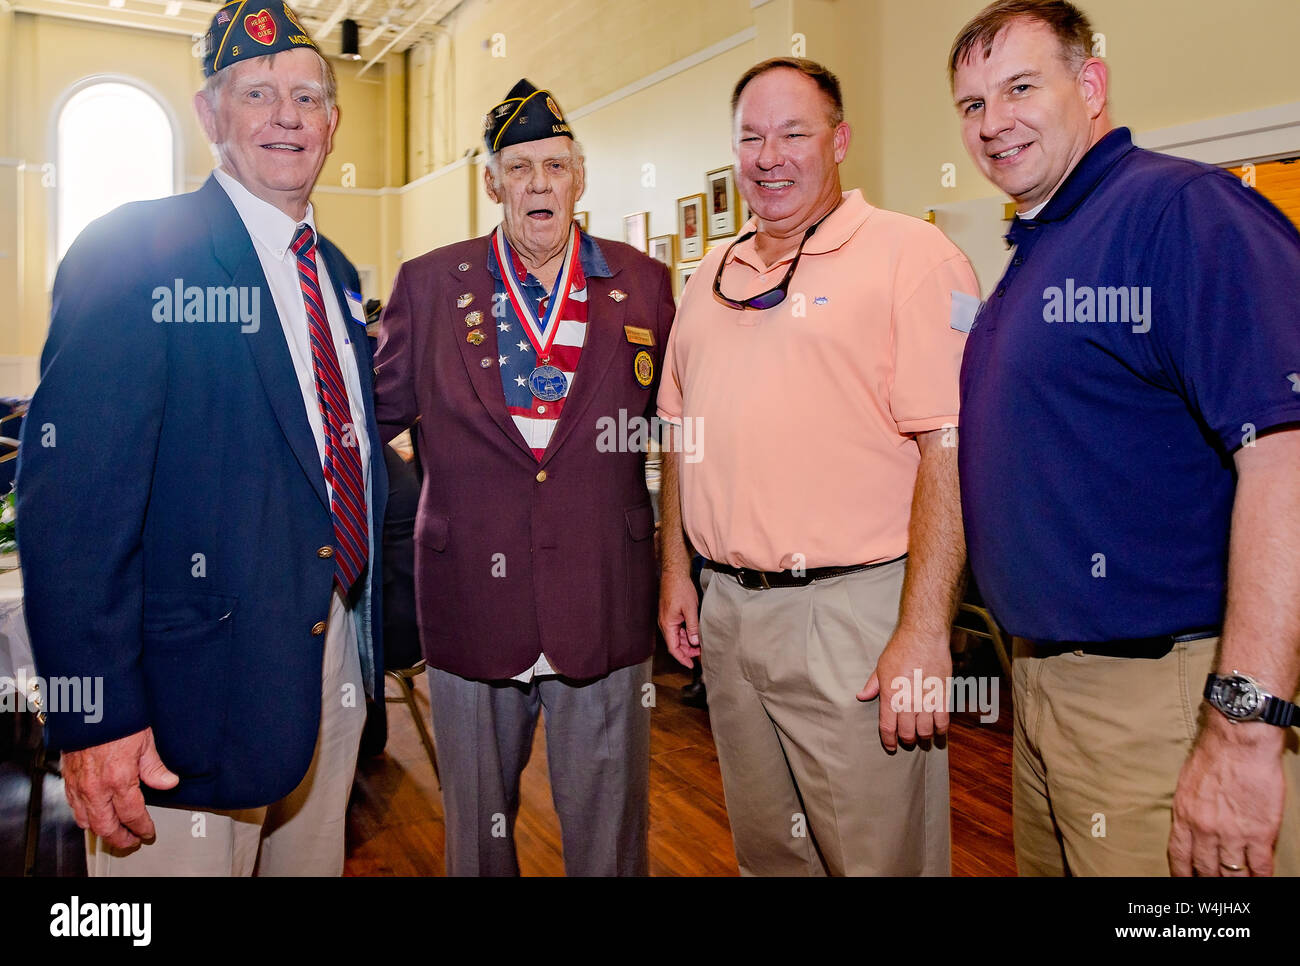 Mitglieder der amerikanischen Legion feiern Sie mit Ihrer Gemeinschaft während der Post 3 open house in Mobile, Alabama. Stockfoto